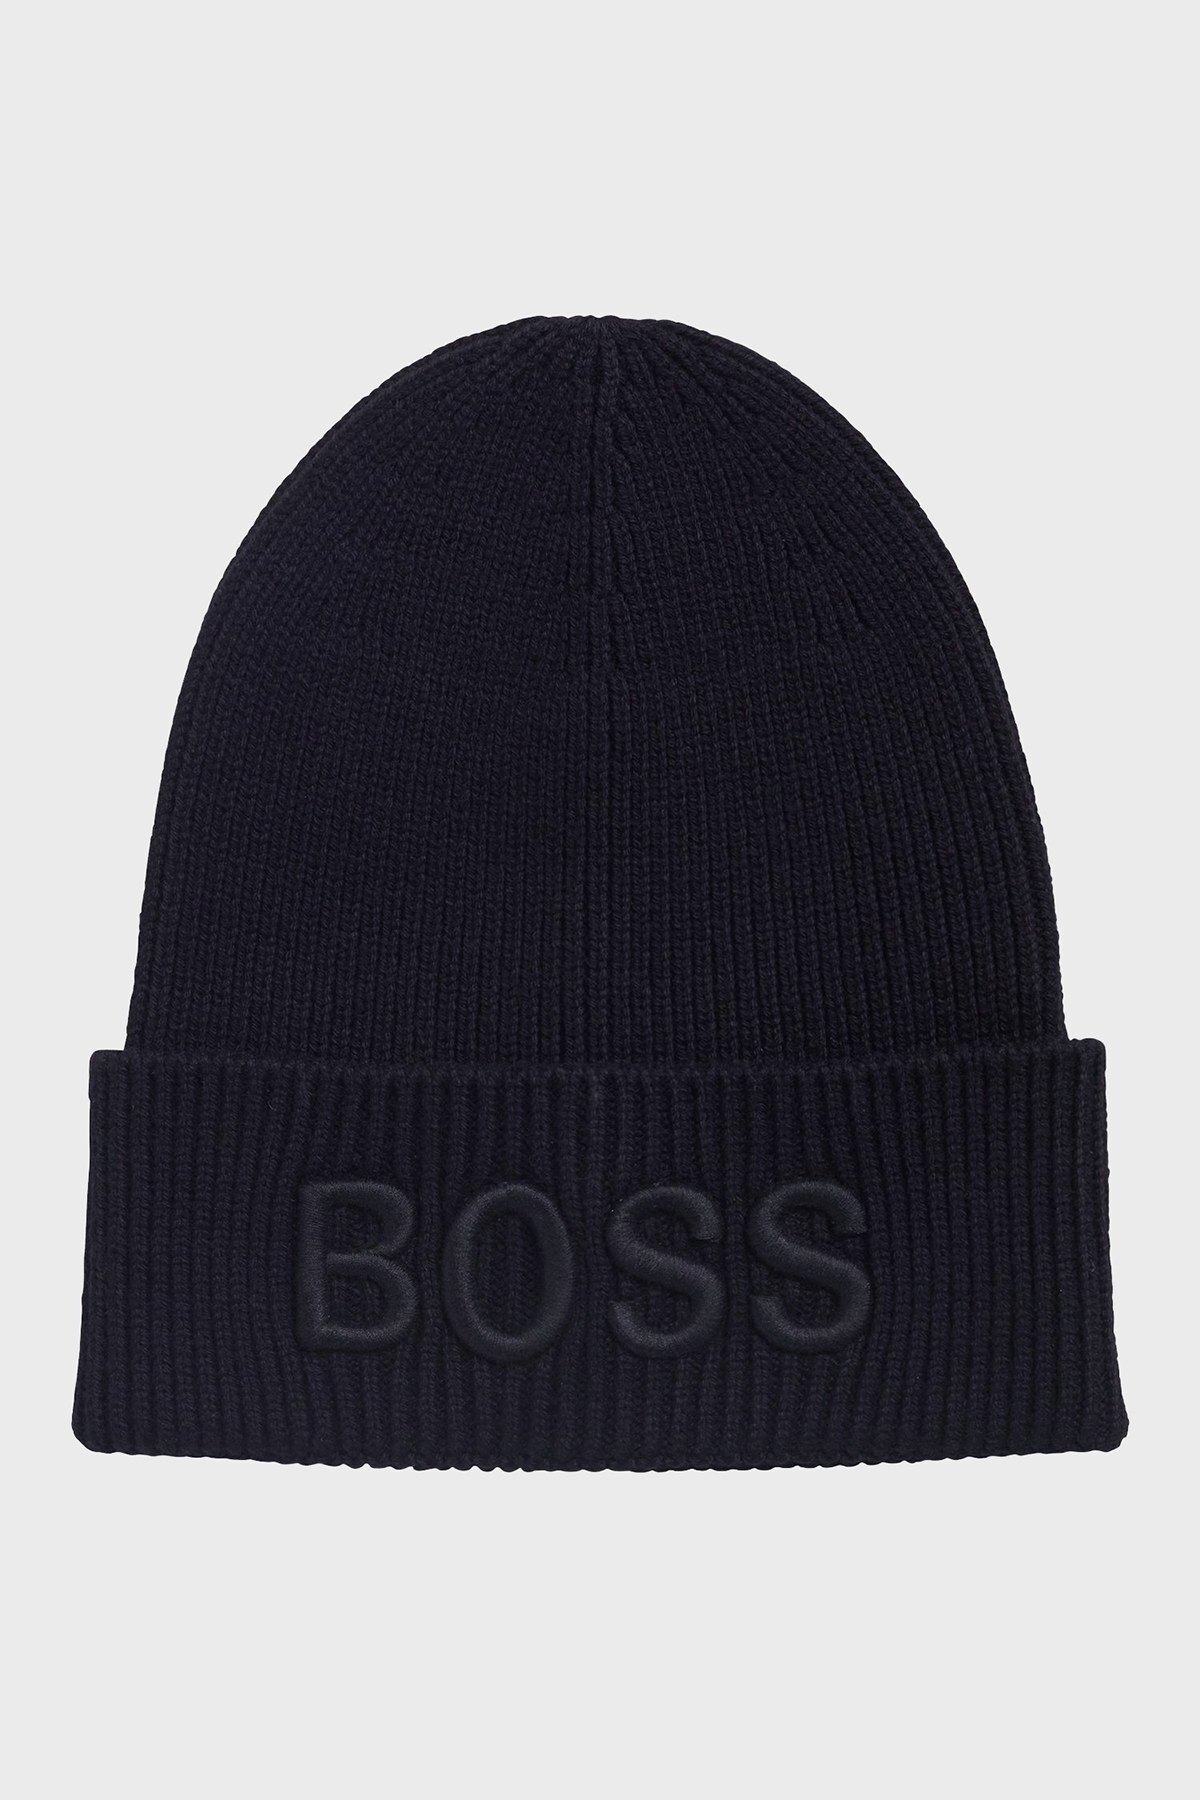 Hugo Boss Logo İşlemeli Yün Karışımlı Erkek Şapka 50444424 404 LACİVERT